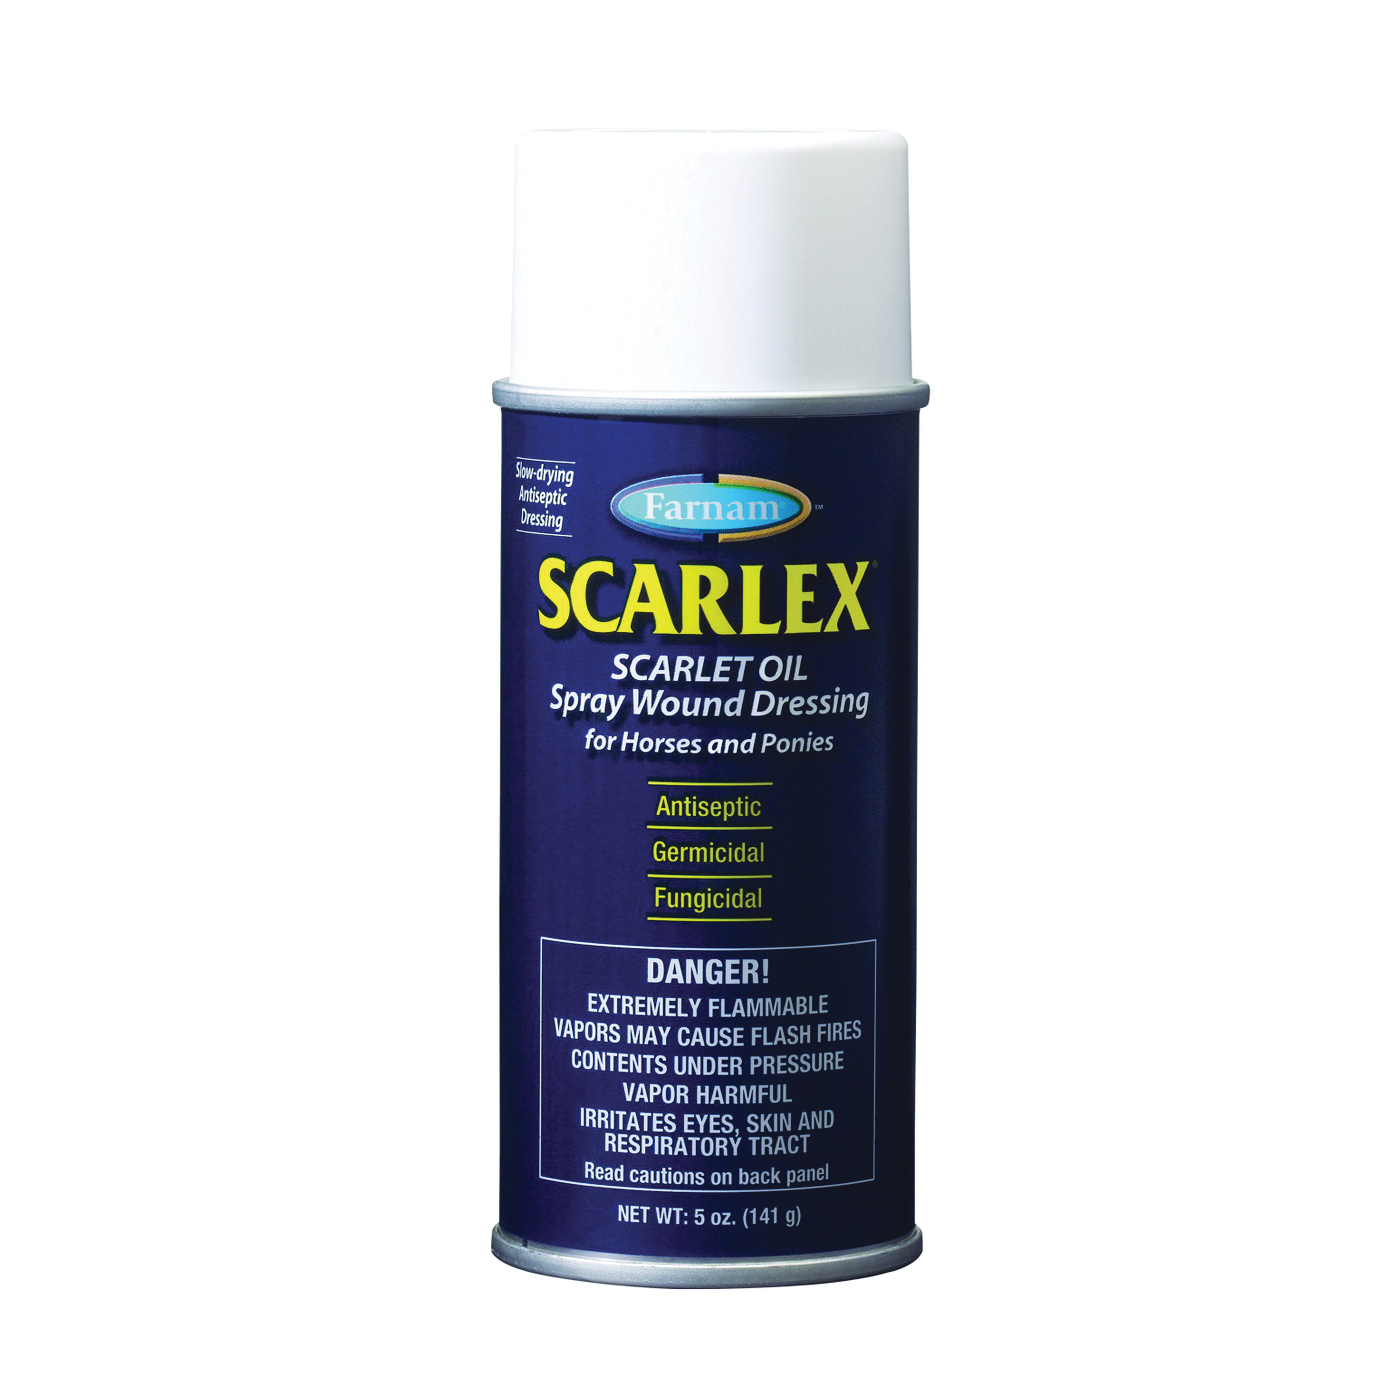 Scarlex 31401 Wound Dressing Oil, Oil, 5 oz